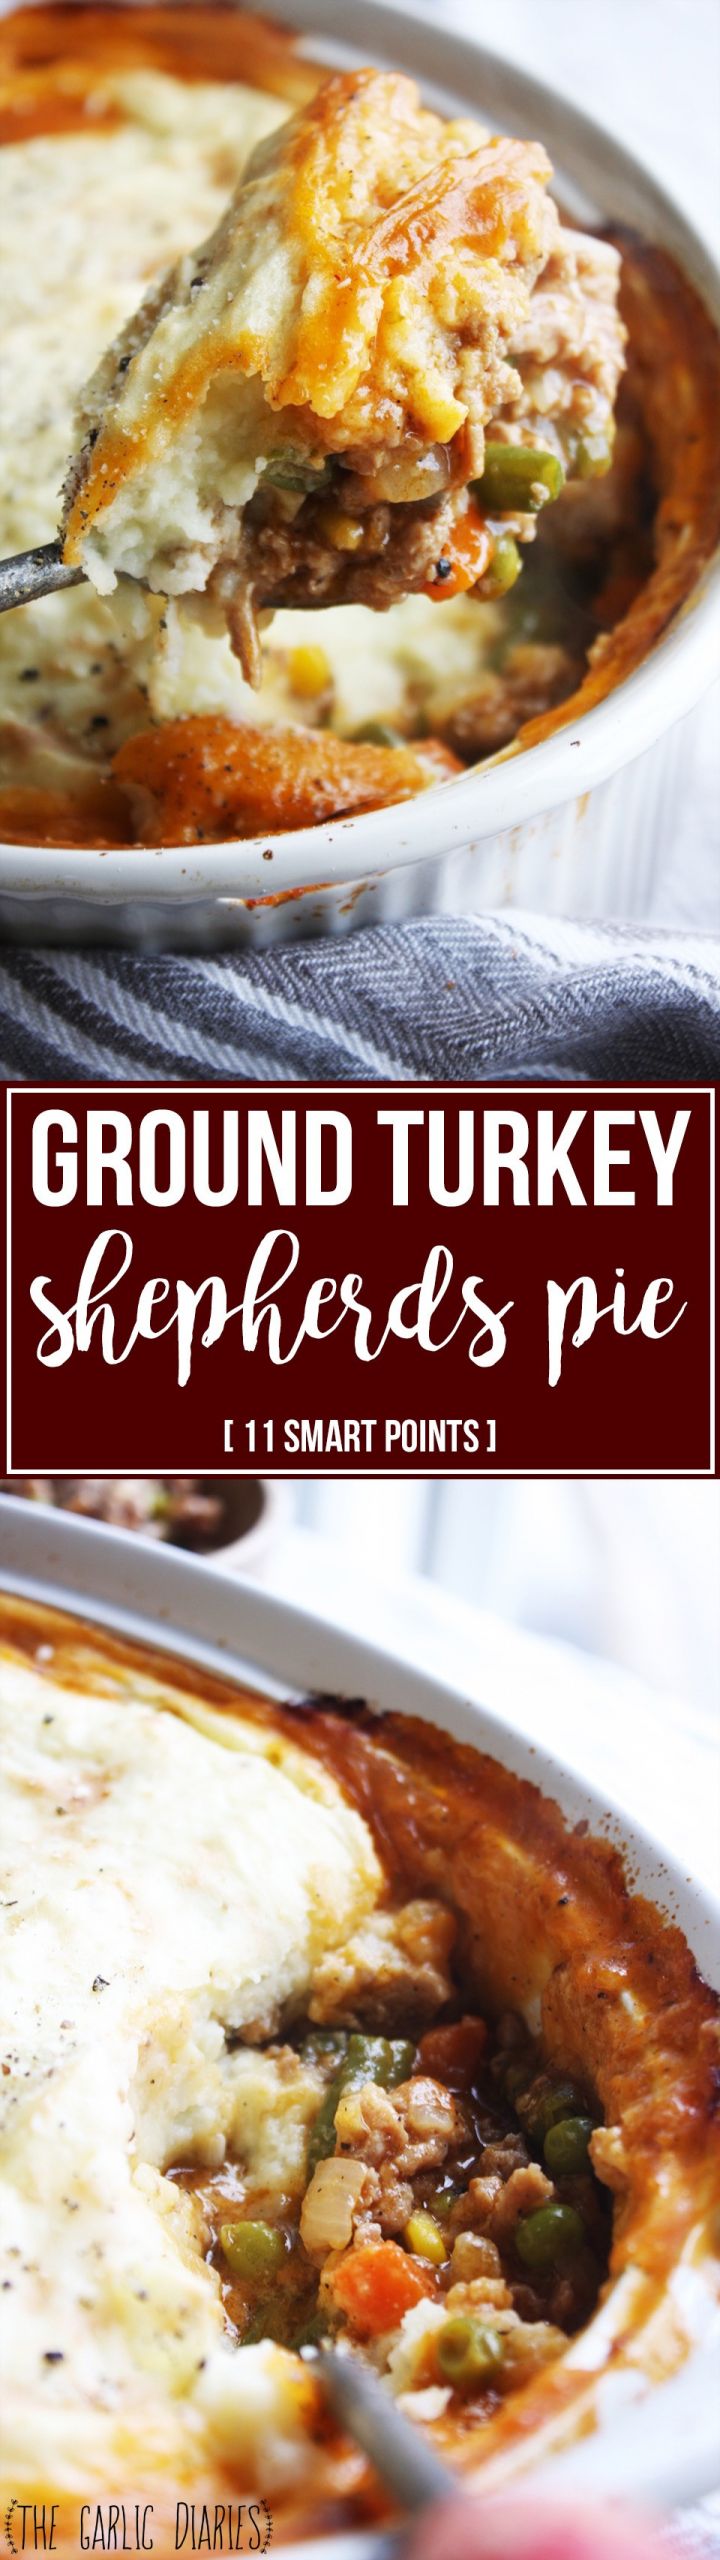 Shepherd'S Pie With Ground Turkey
 Ground Turkey Shepherd’s Pie